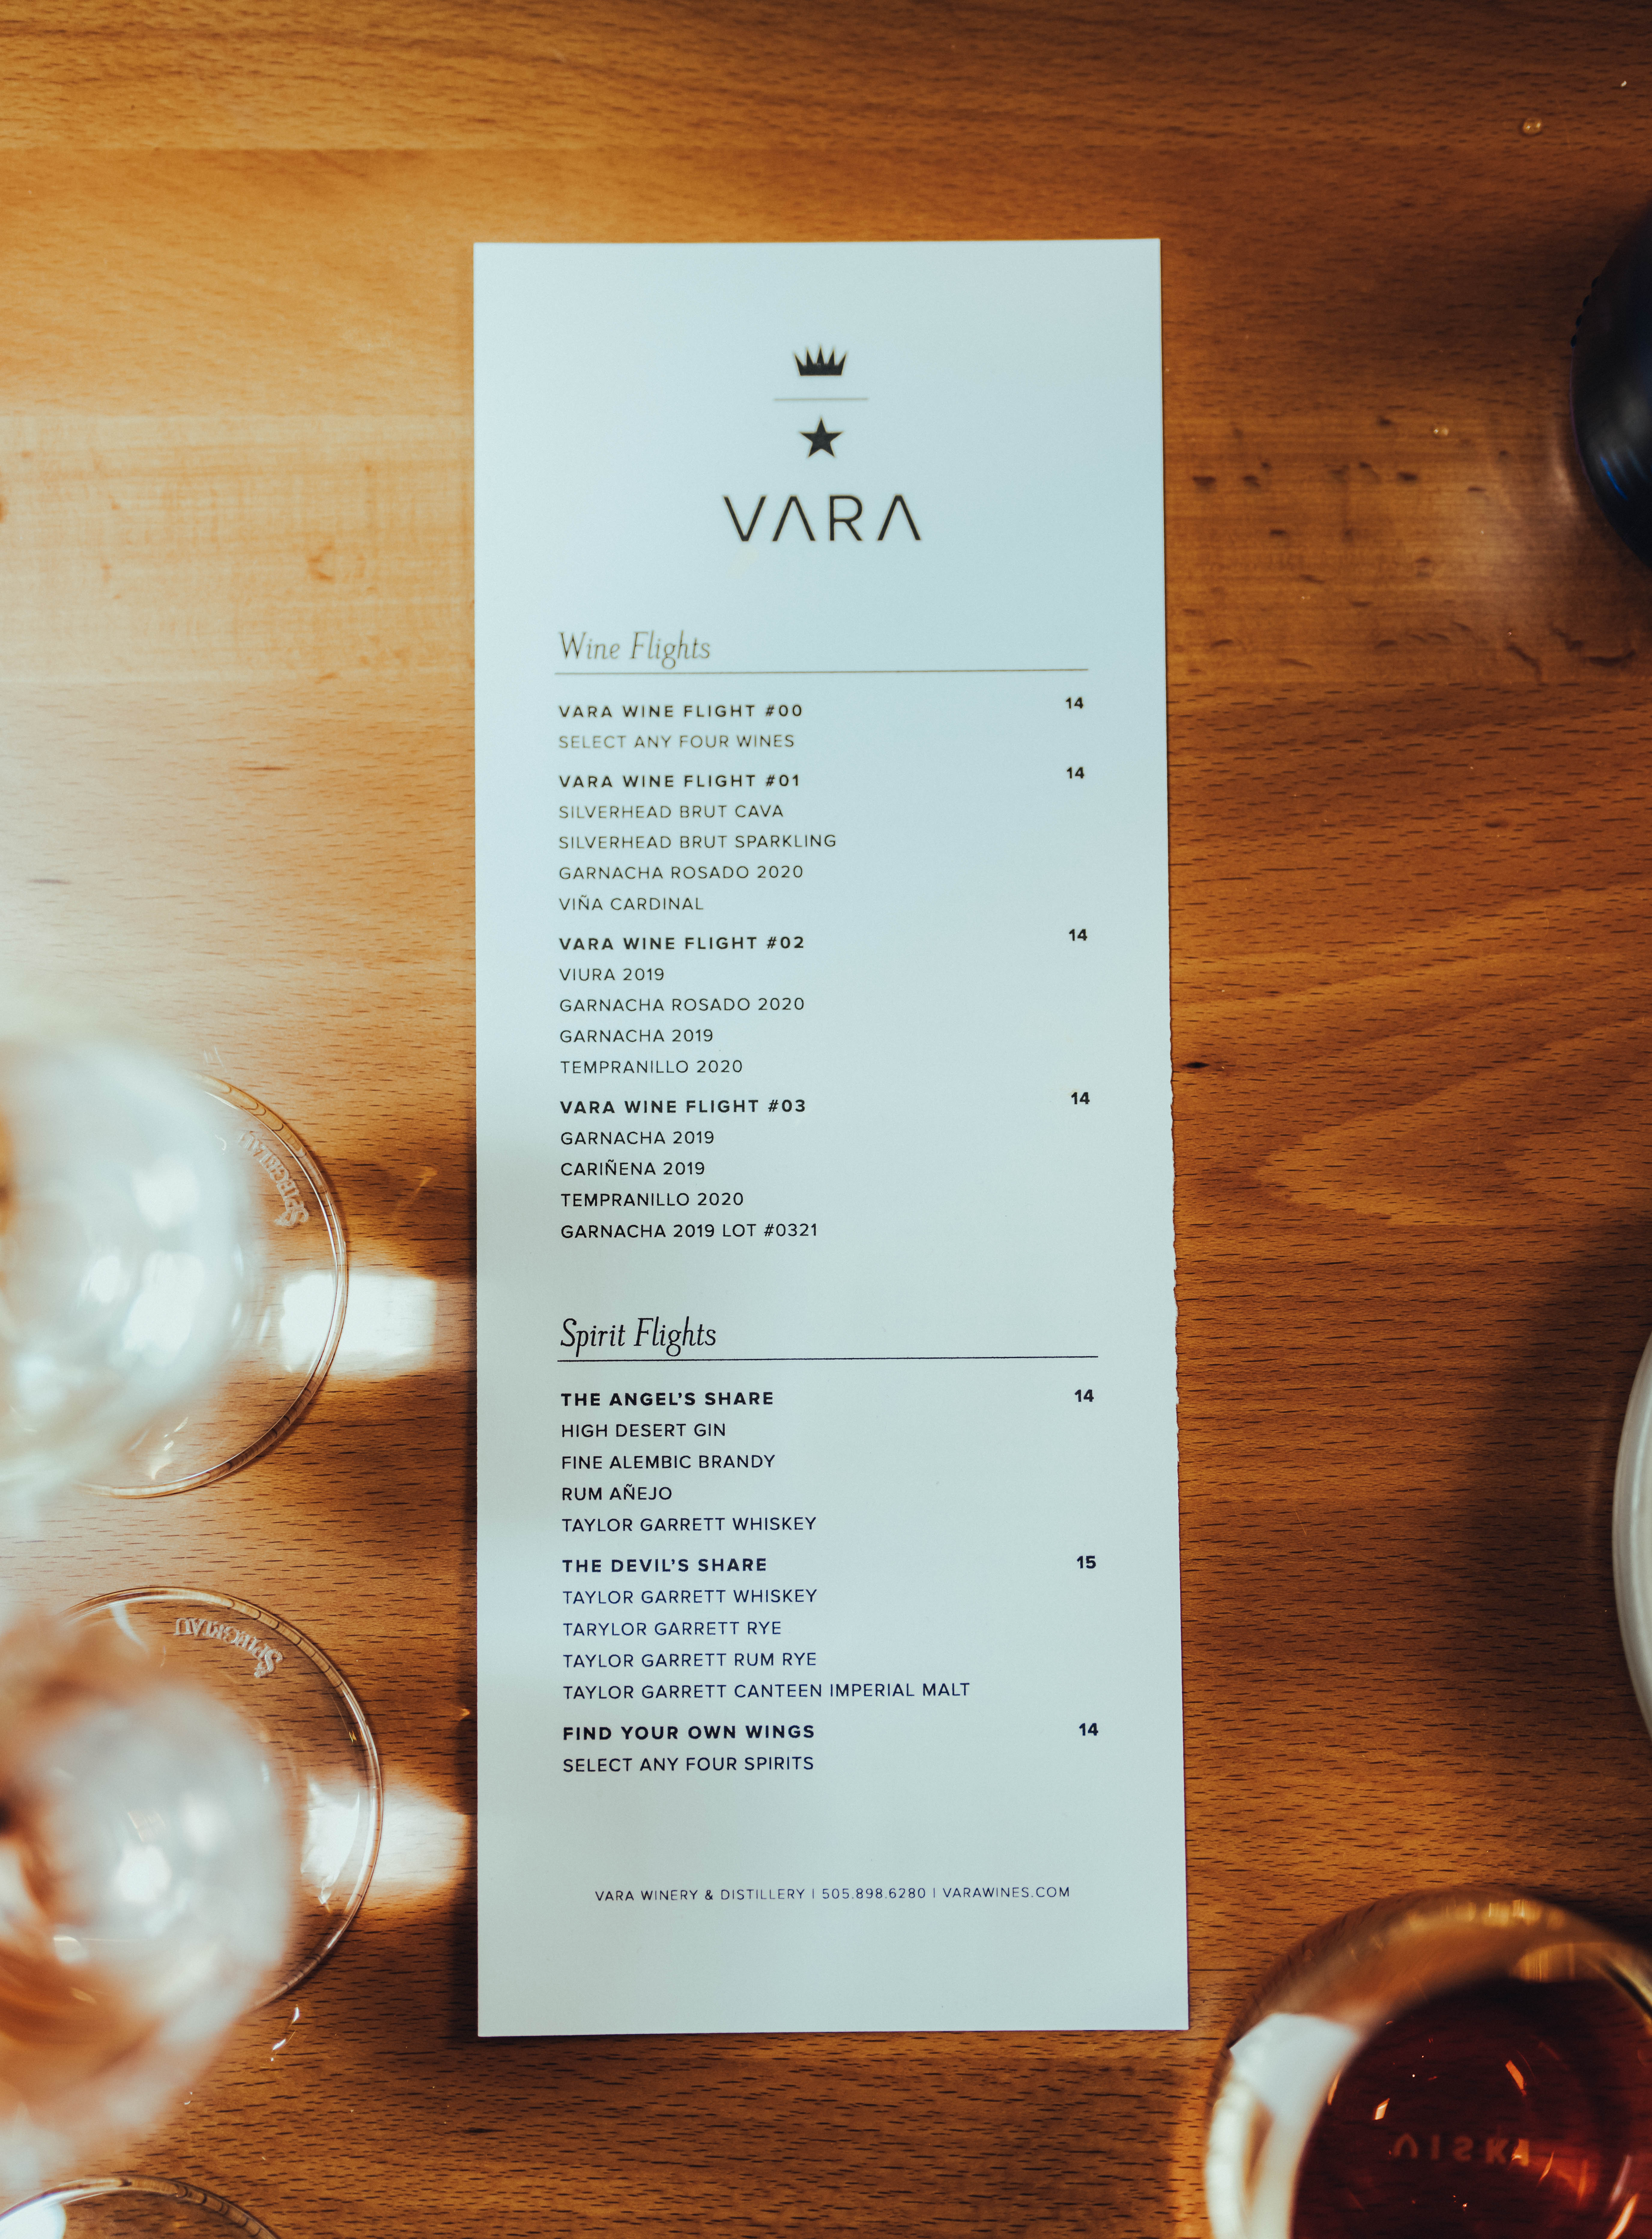 Vara Winery & Distillery